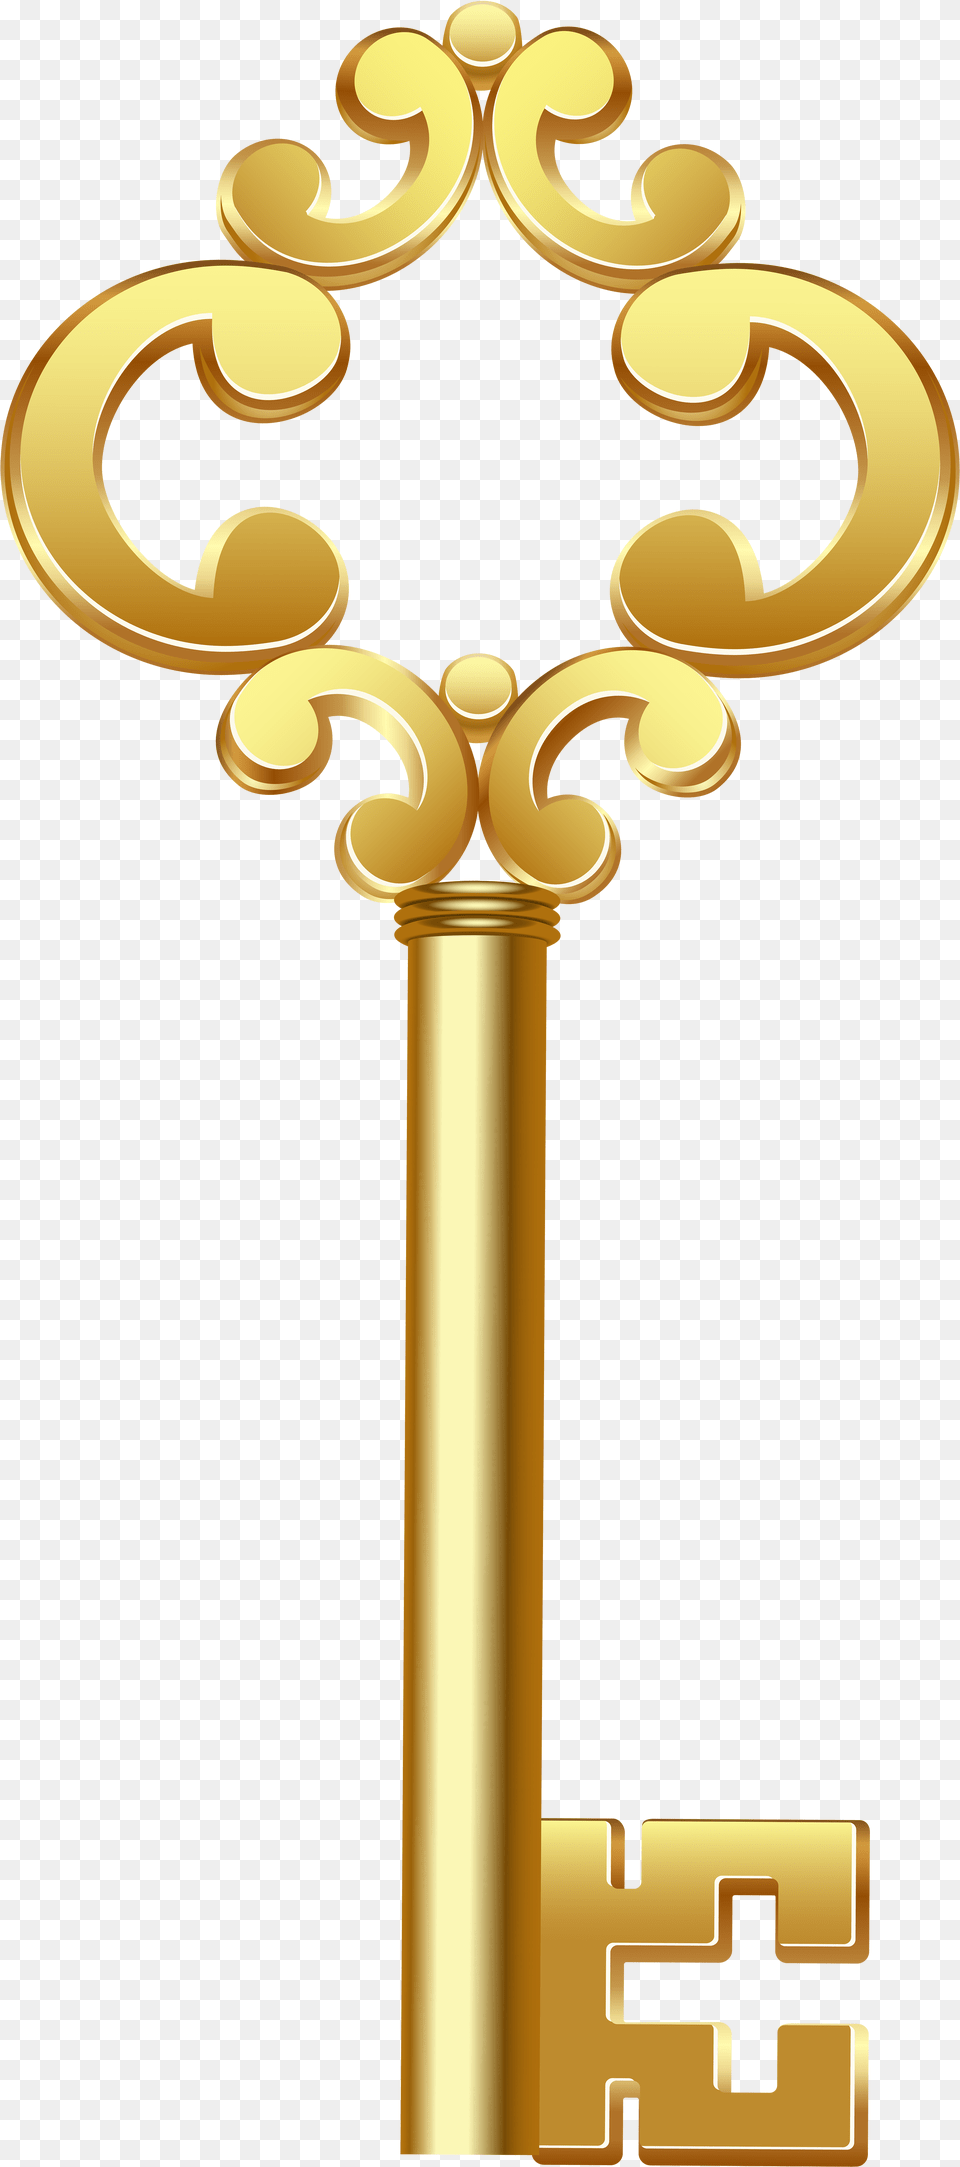 Gold Key Clip Art Clip Art, Cross, Symbol Free Png Download